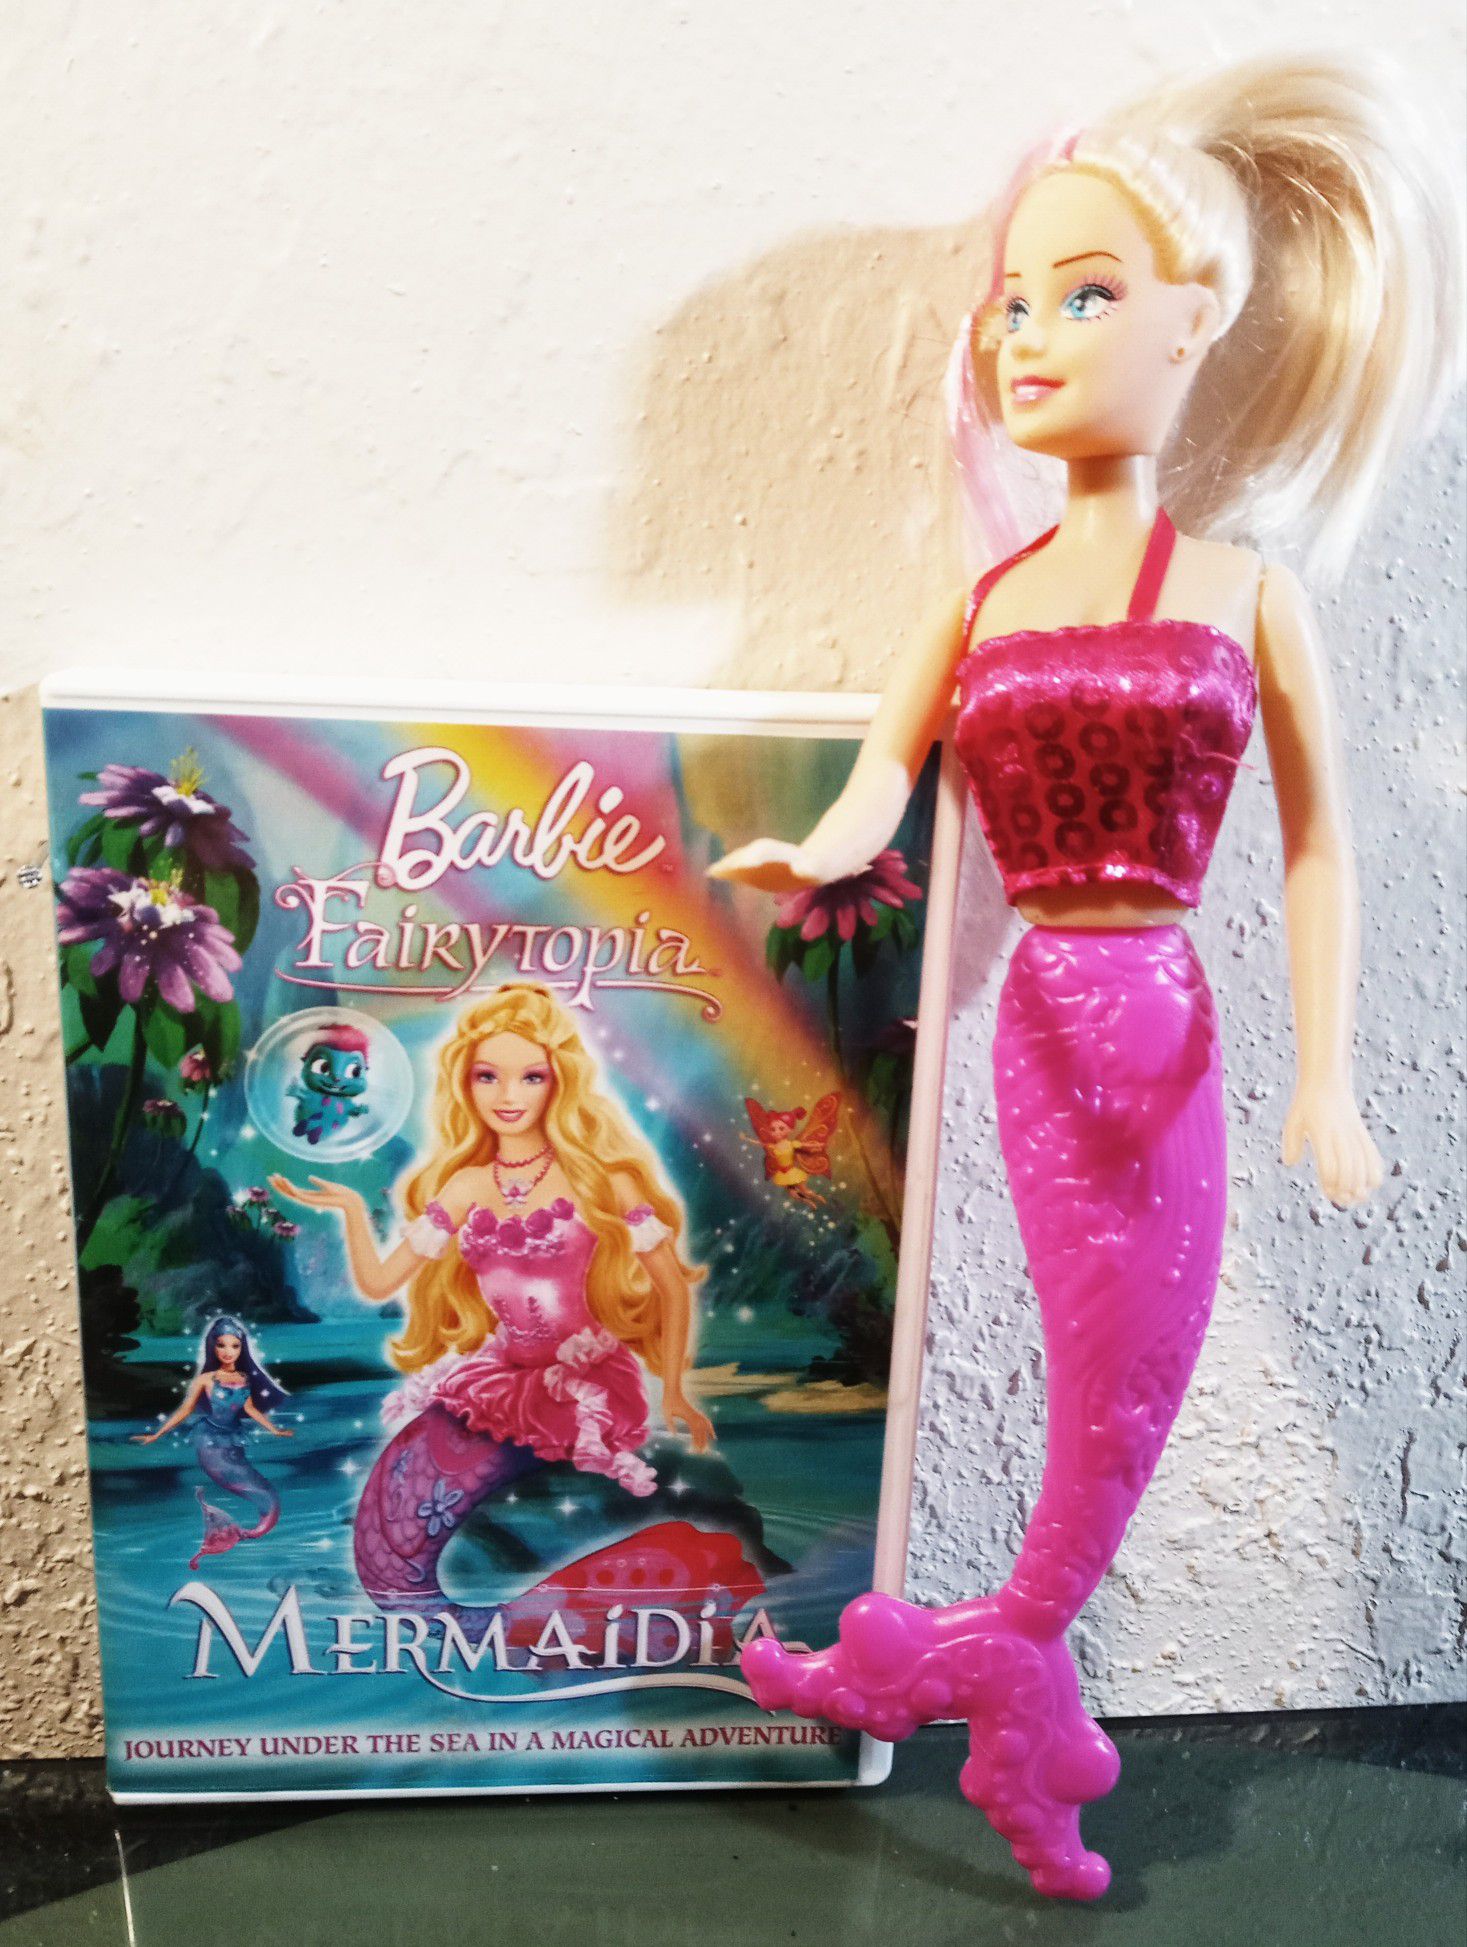 Barbie - Fairytopia: Mermaidia + mermaid